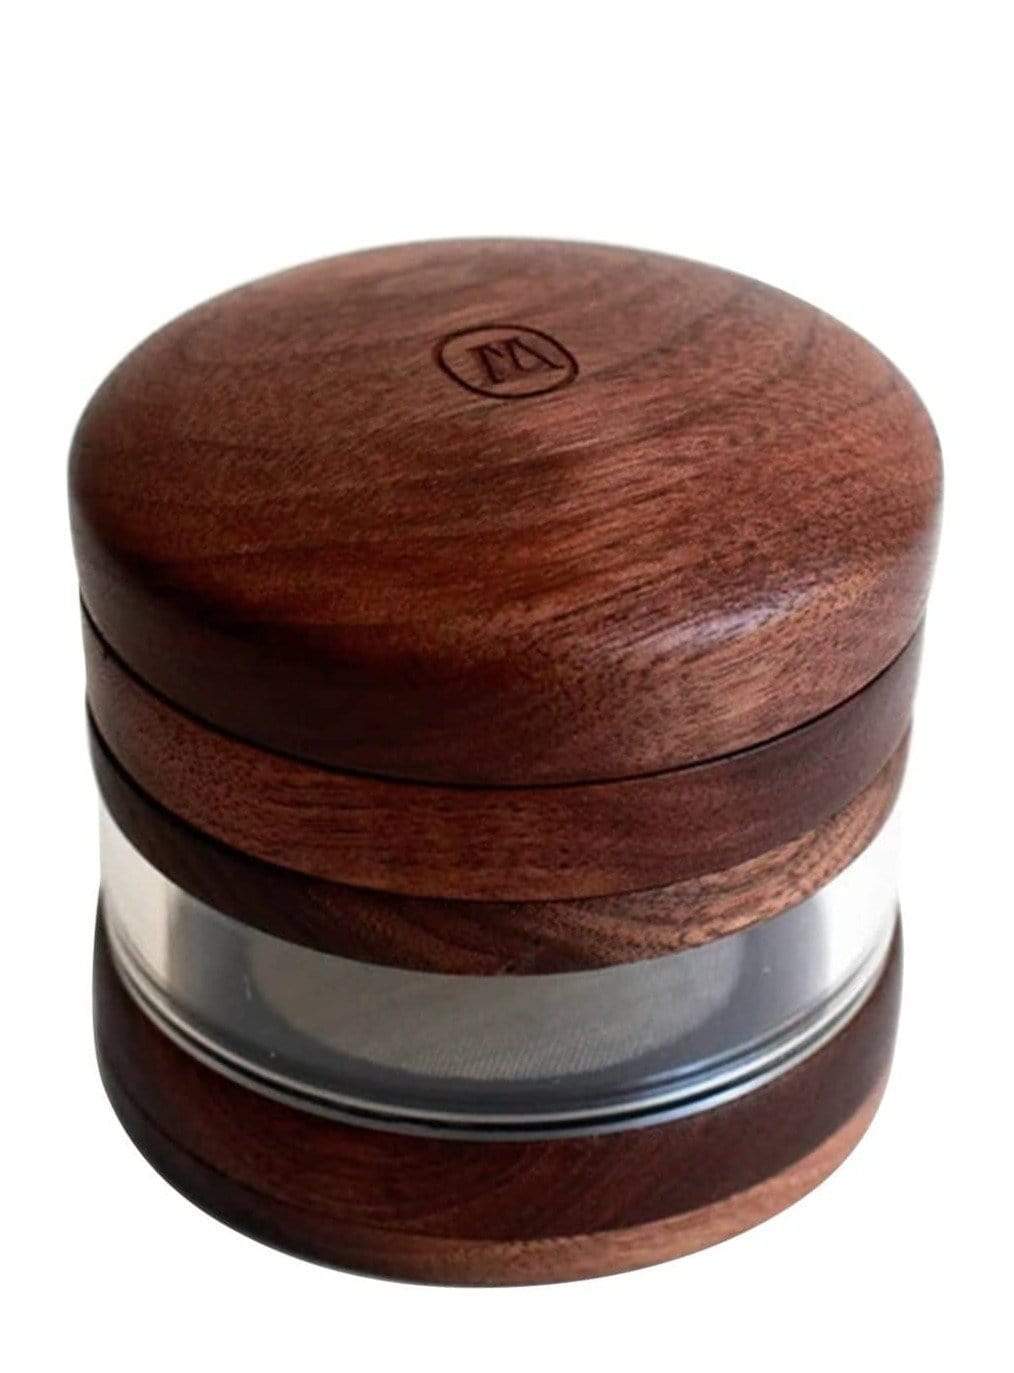 Wooden Grinder Jar